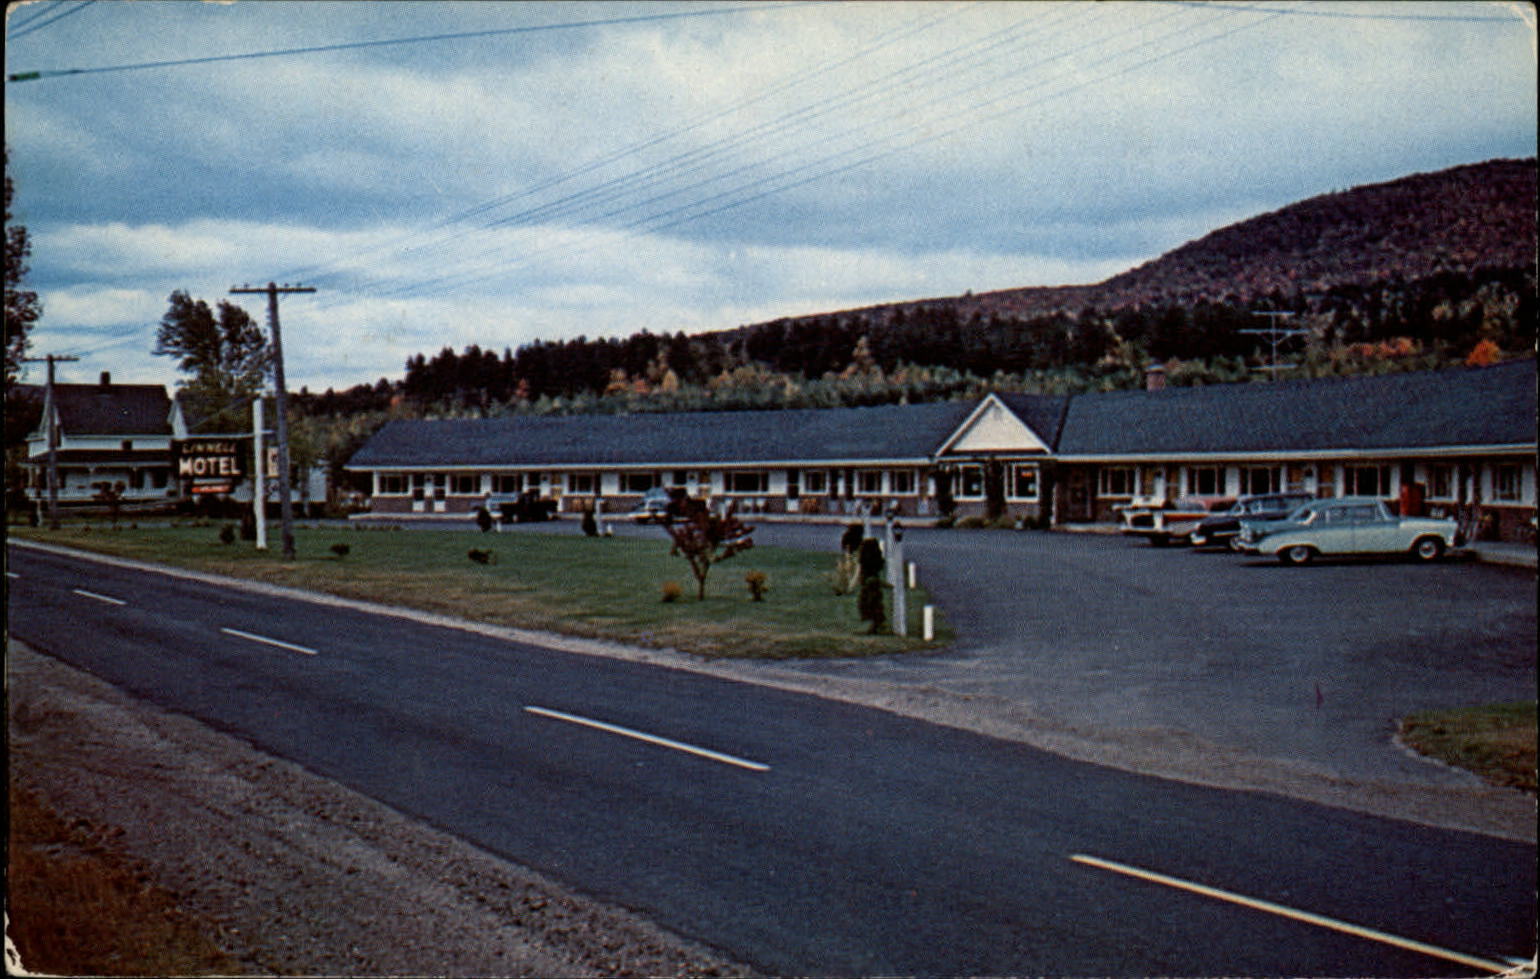 Linnell Motel Rumford Maine vintage cars ~ 1950s-60s postcard